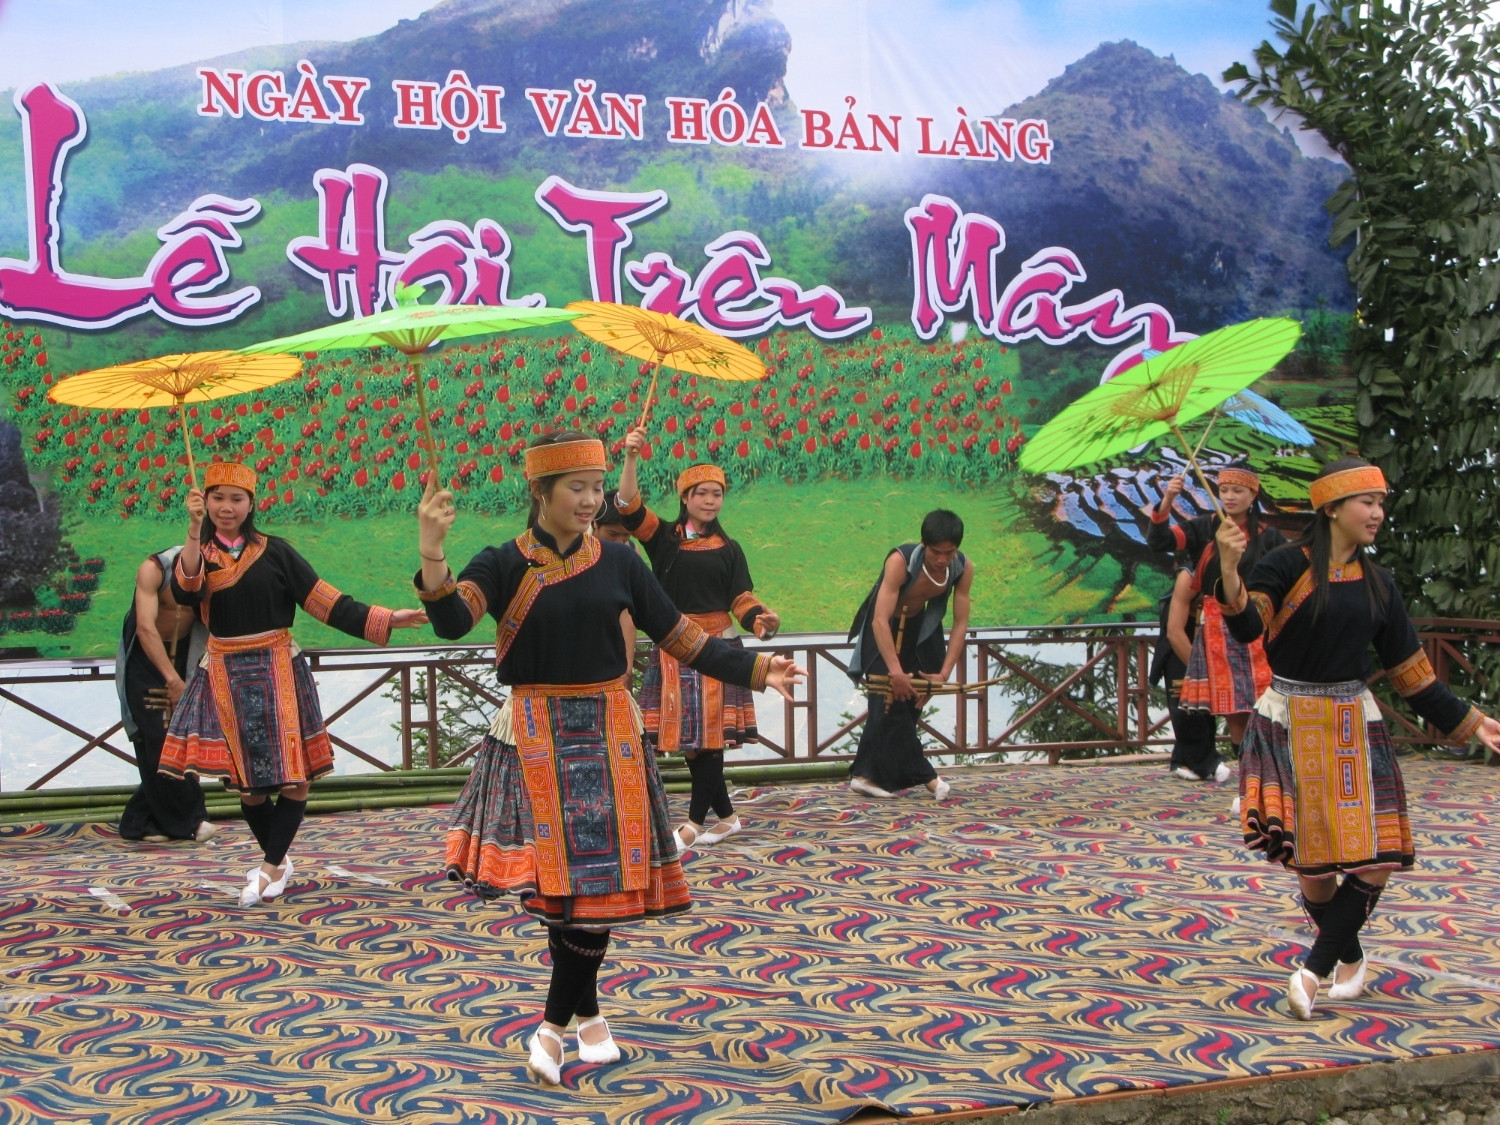 Nhiều lễ hội mang đậm bản sắc văn hóa dân tộc tại Lào Cai đang góp phần quan trọng tạo đà phát triển du lịch vùng đồng bào DTTS.